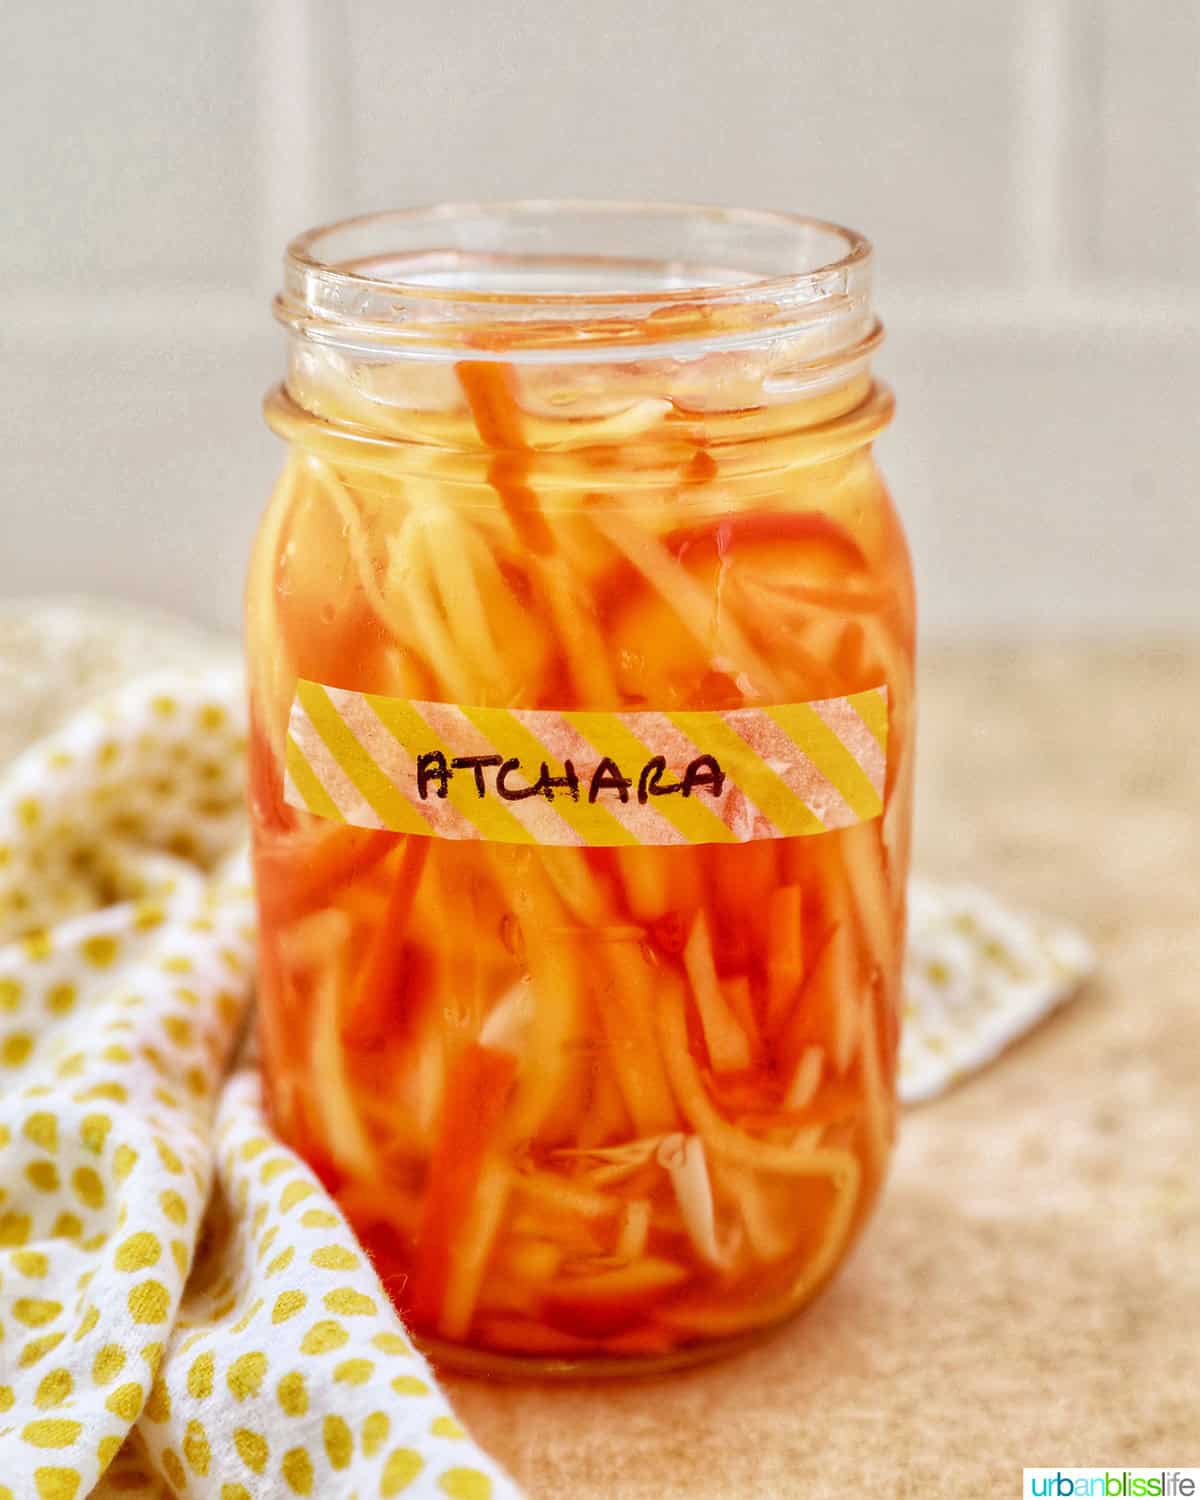 mason jar with Filipino atchara condiment - papaya, carrots, red bell pepper, garlic, ginger.